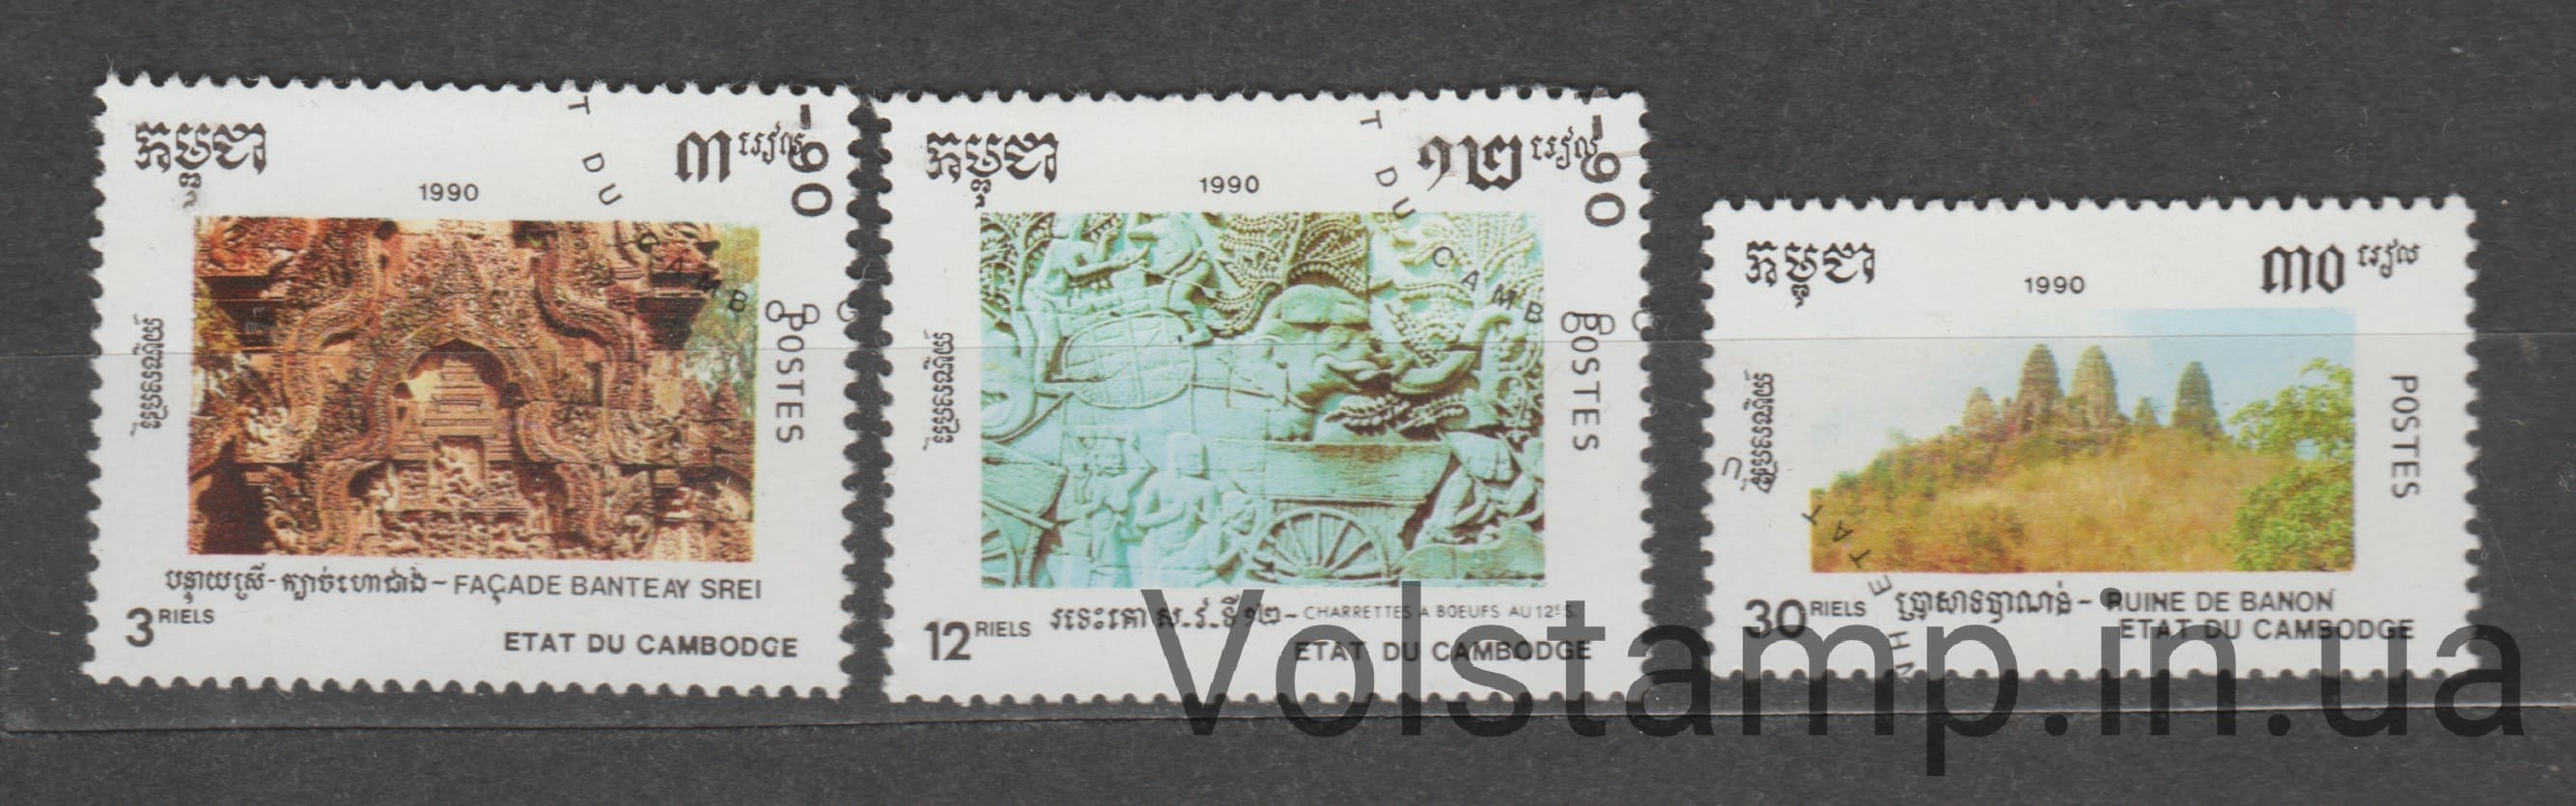 1990 Камбоджа Серия марок (Кхмерская культура, танцы) Гашеные №990-992